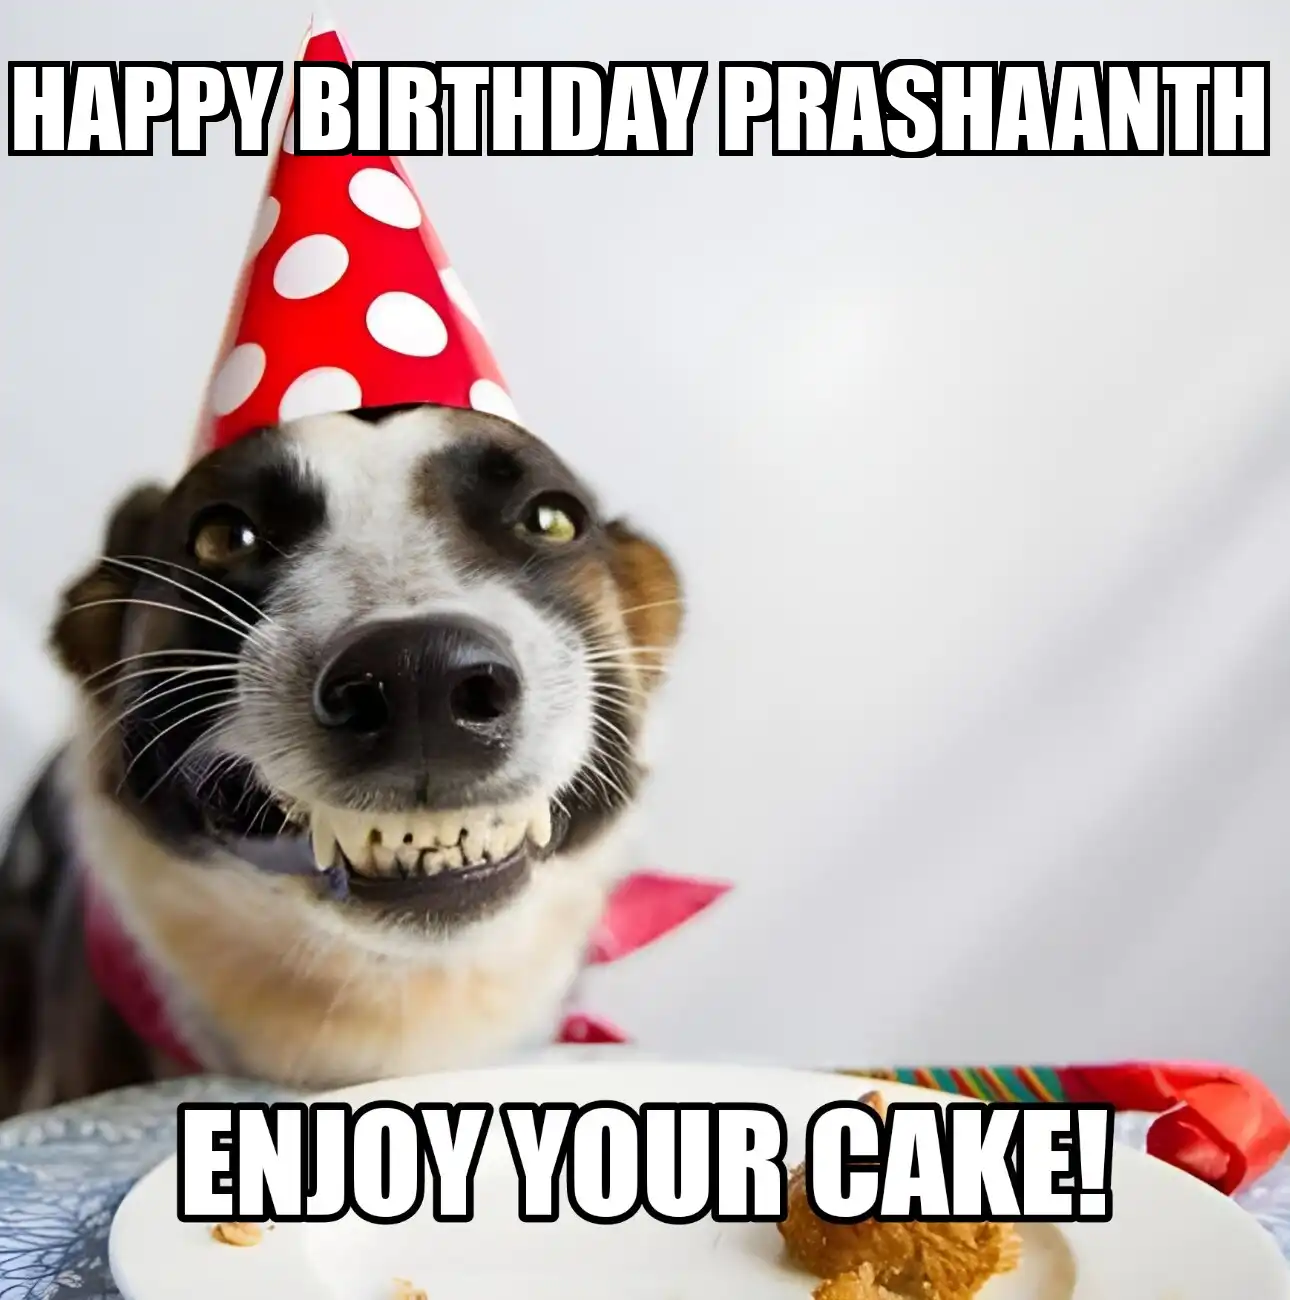 Happy Birthday Prashaanth Enjoy Your Cake Dog Meme